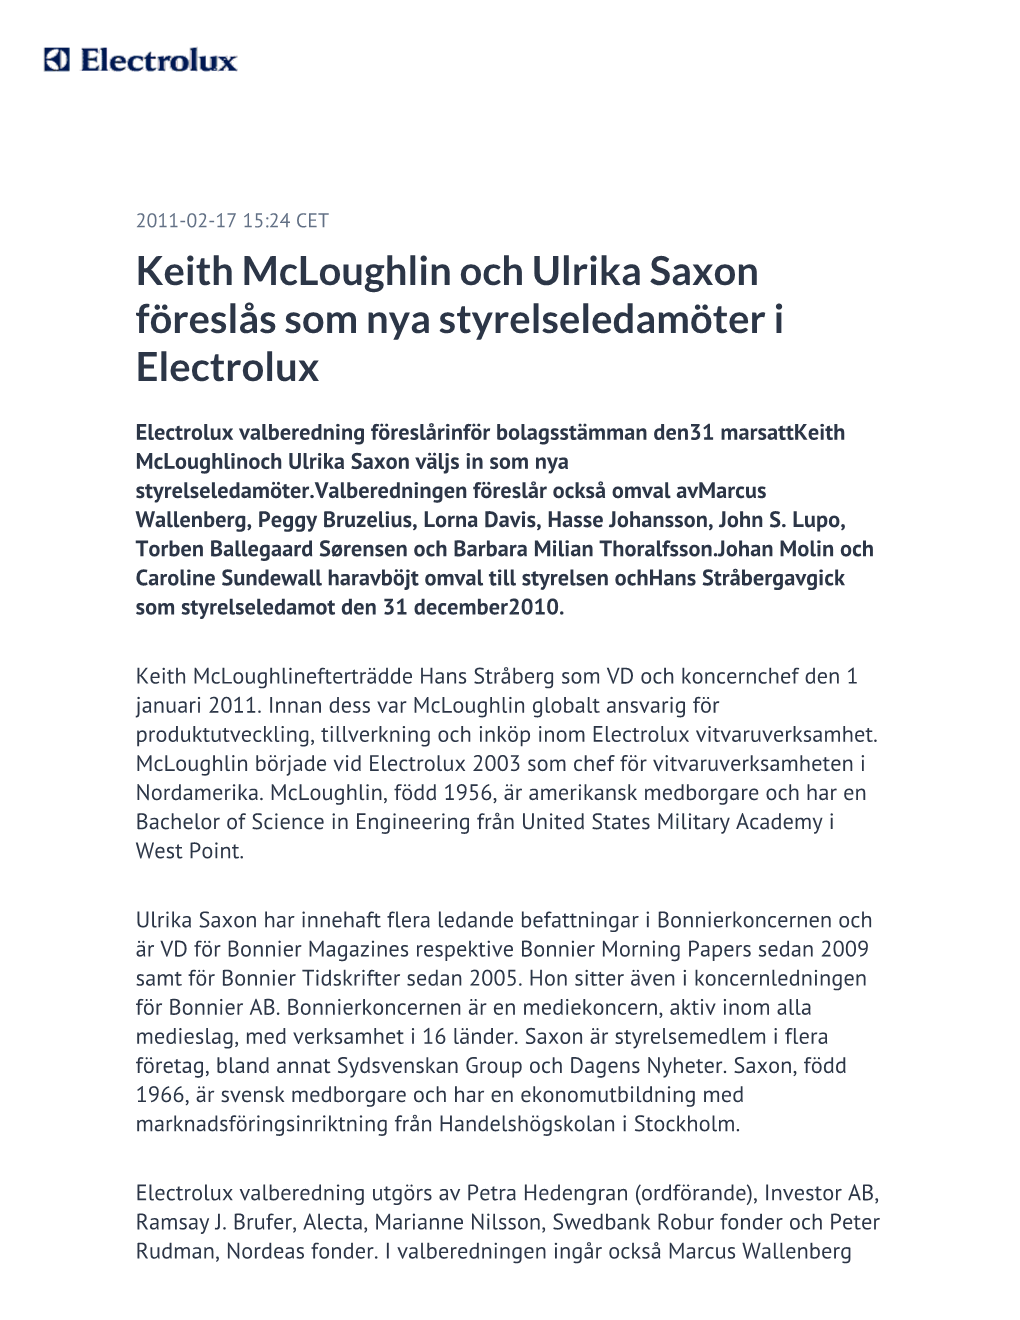 Keith Mcloughlin Och Ulrika Saxon Föreslås Som Nya Styrelseledamöter I Electrolux